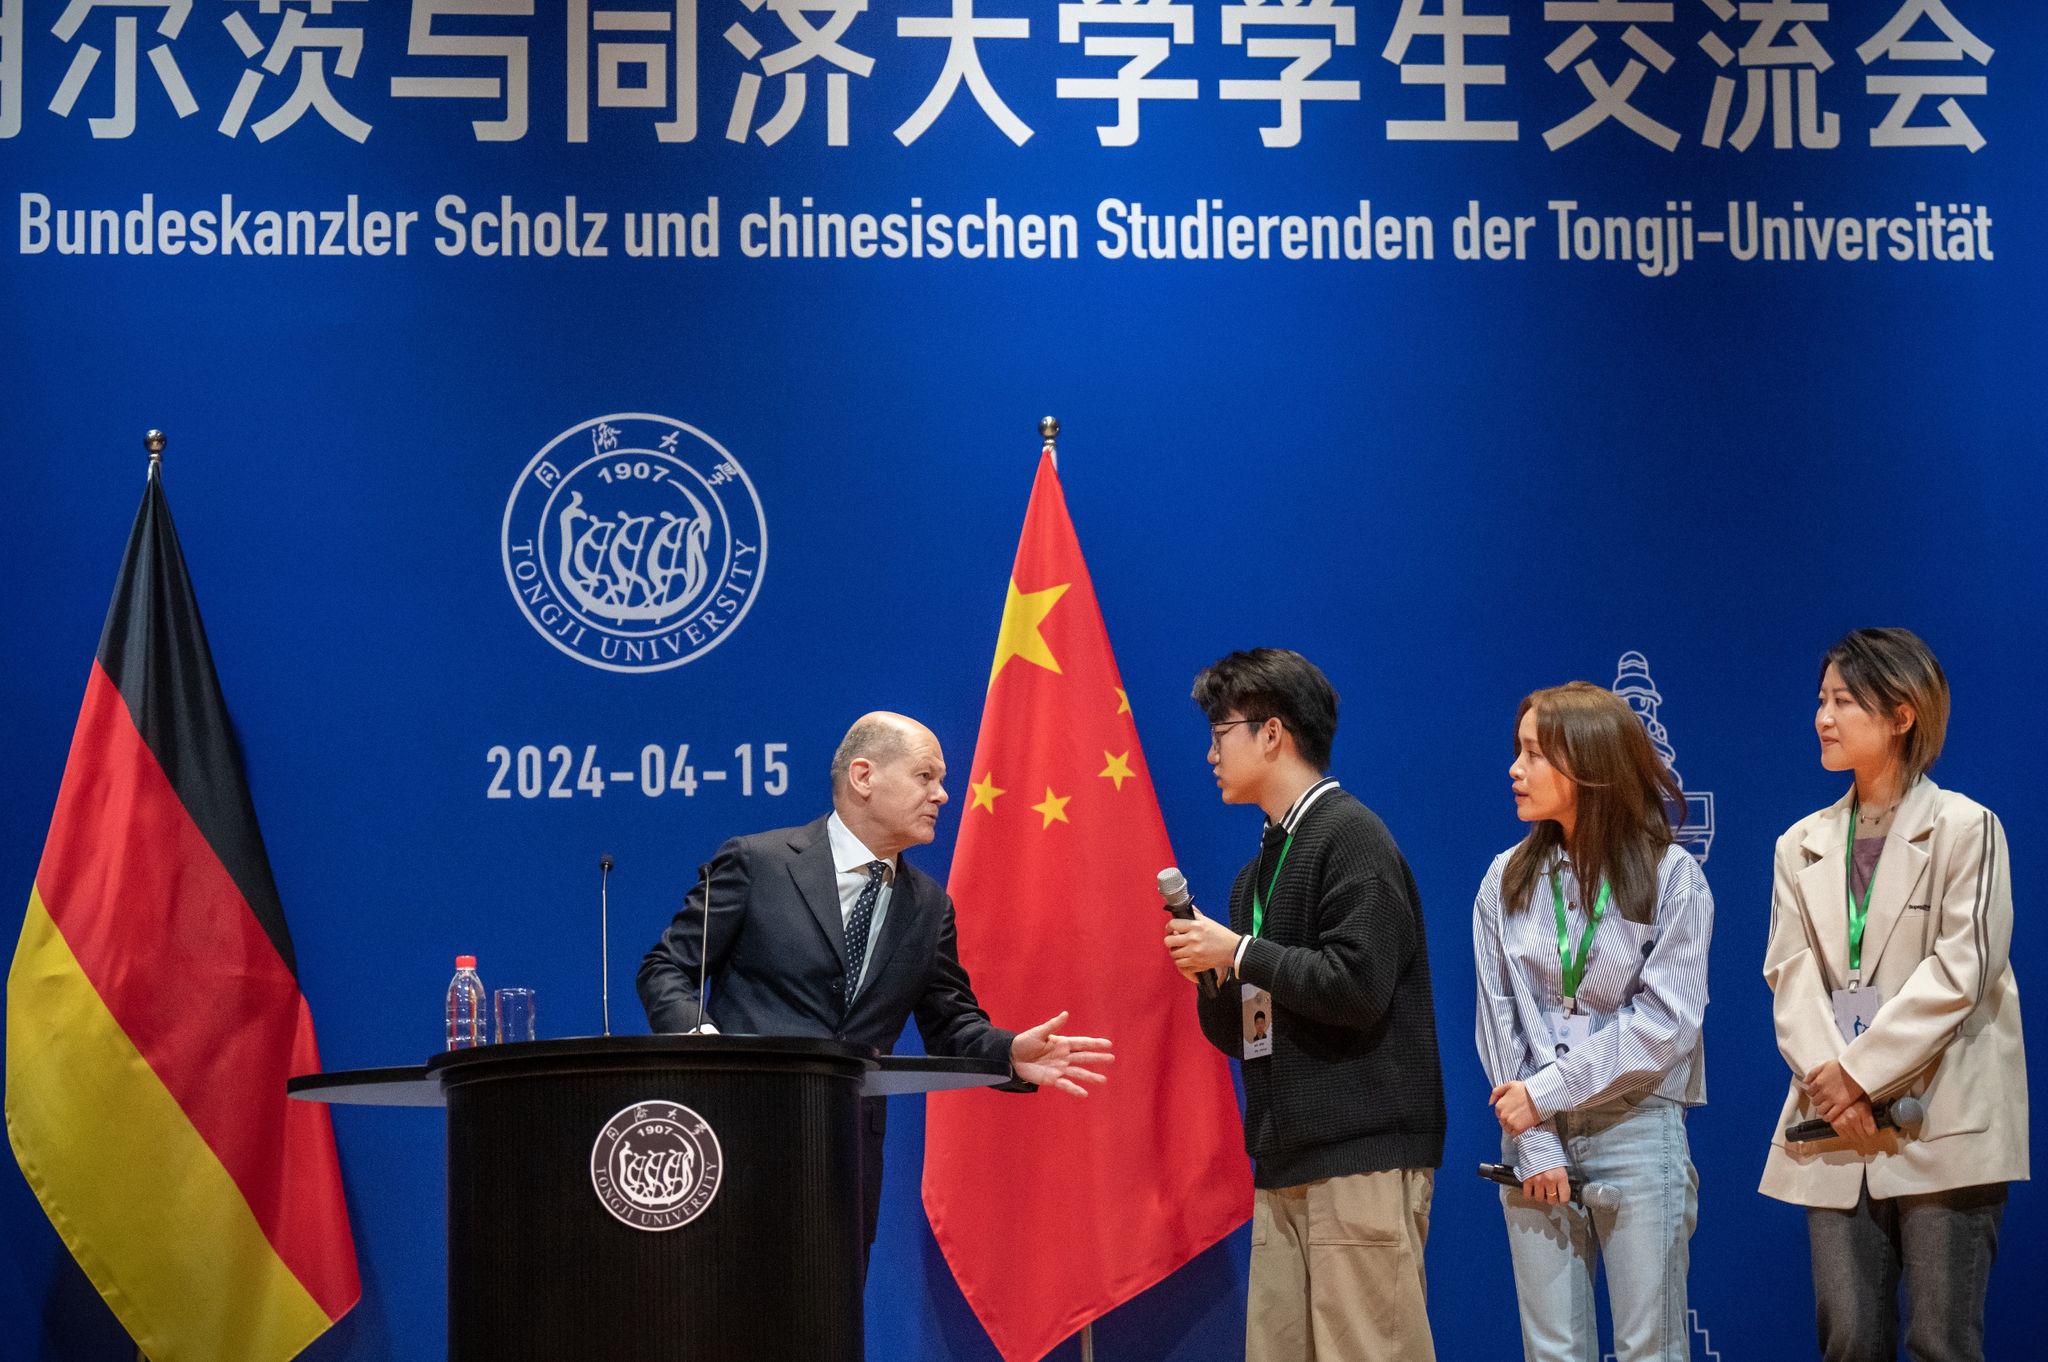 Faire Wettbewerbsbedingungen für deutsche Wirtschaft: Scholz fordert klare Haltung von China